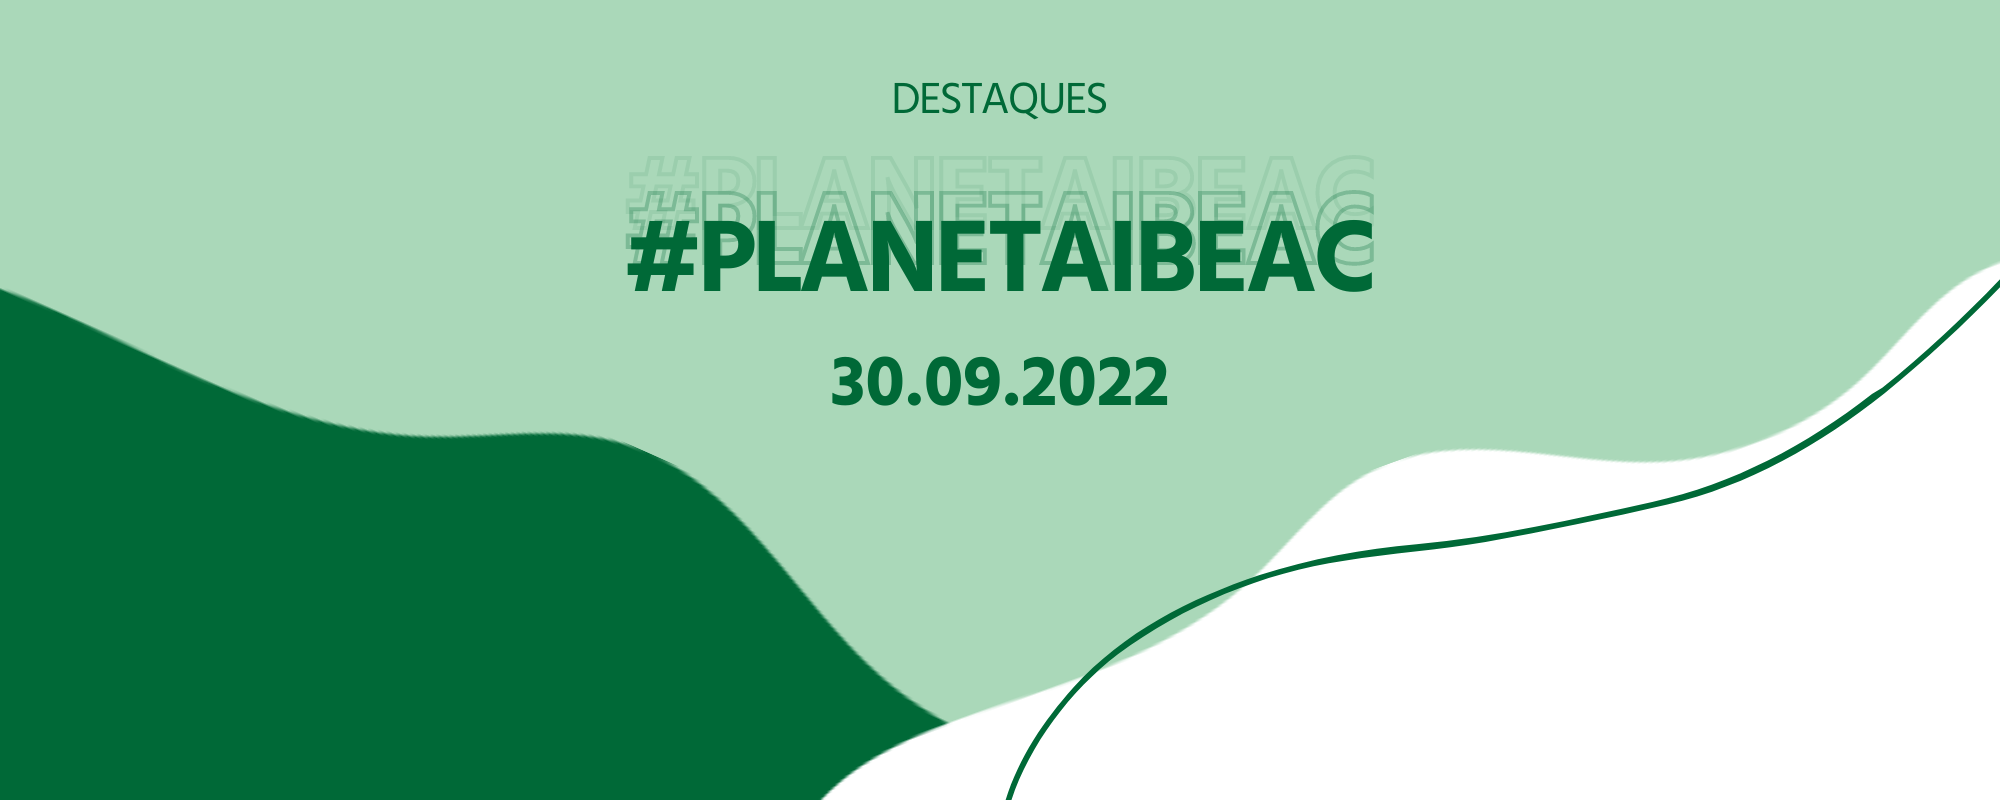 Destaques #PlanetaIbeac 30.08.2022